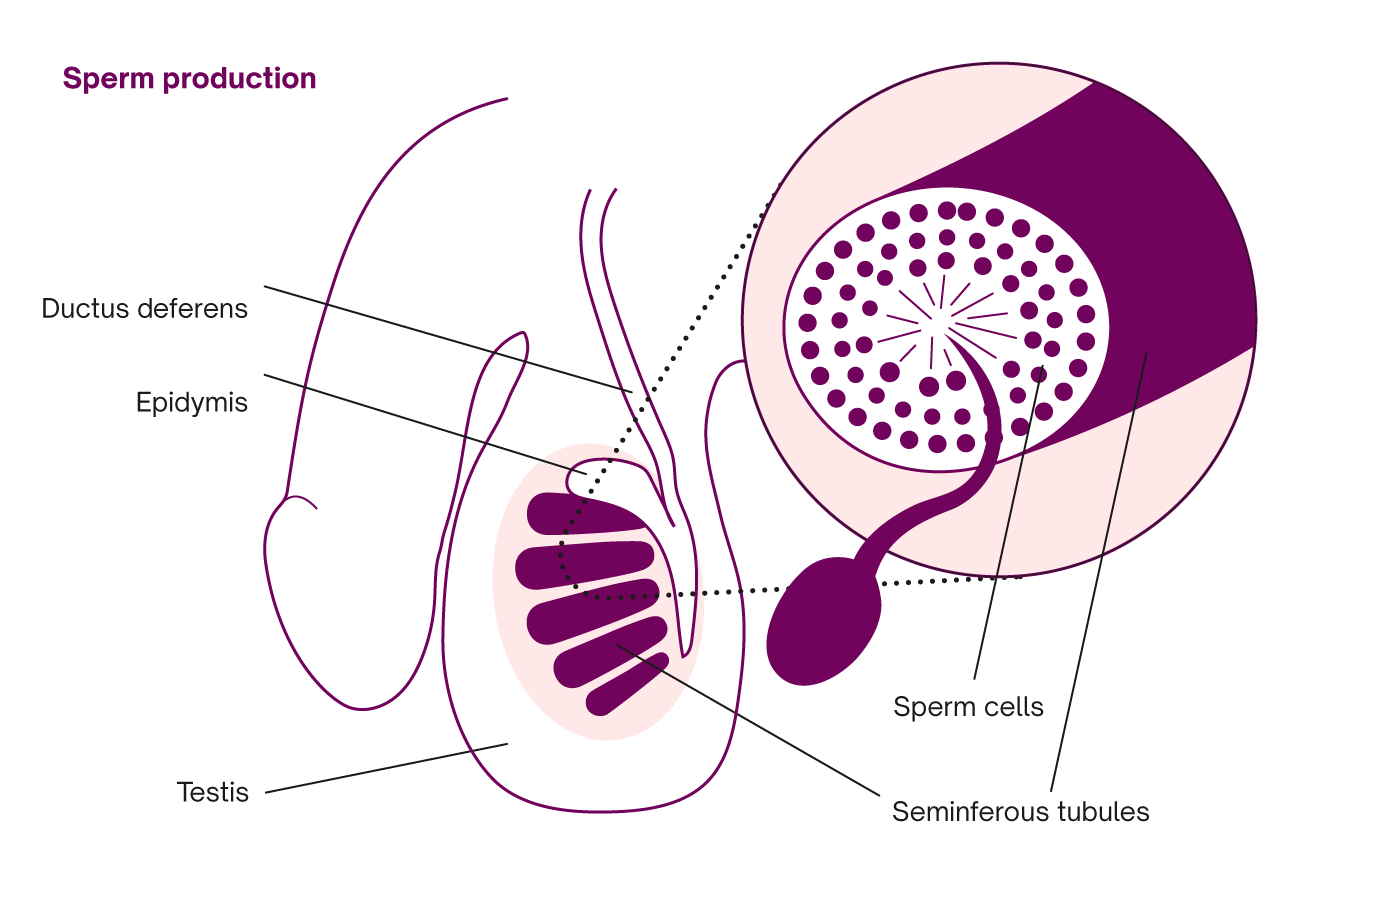 Sperm preduction vs semen production